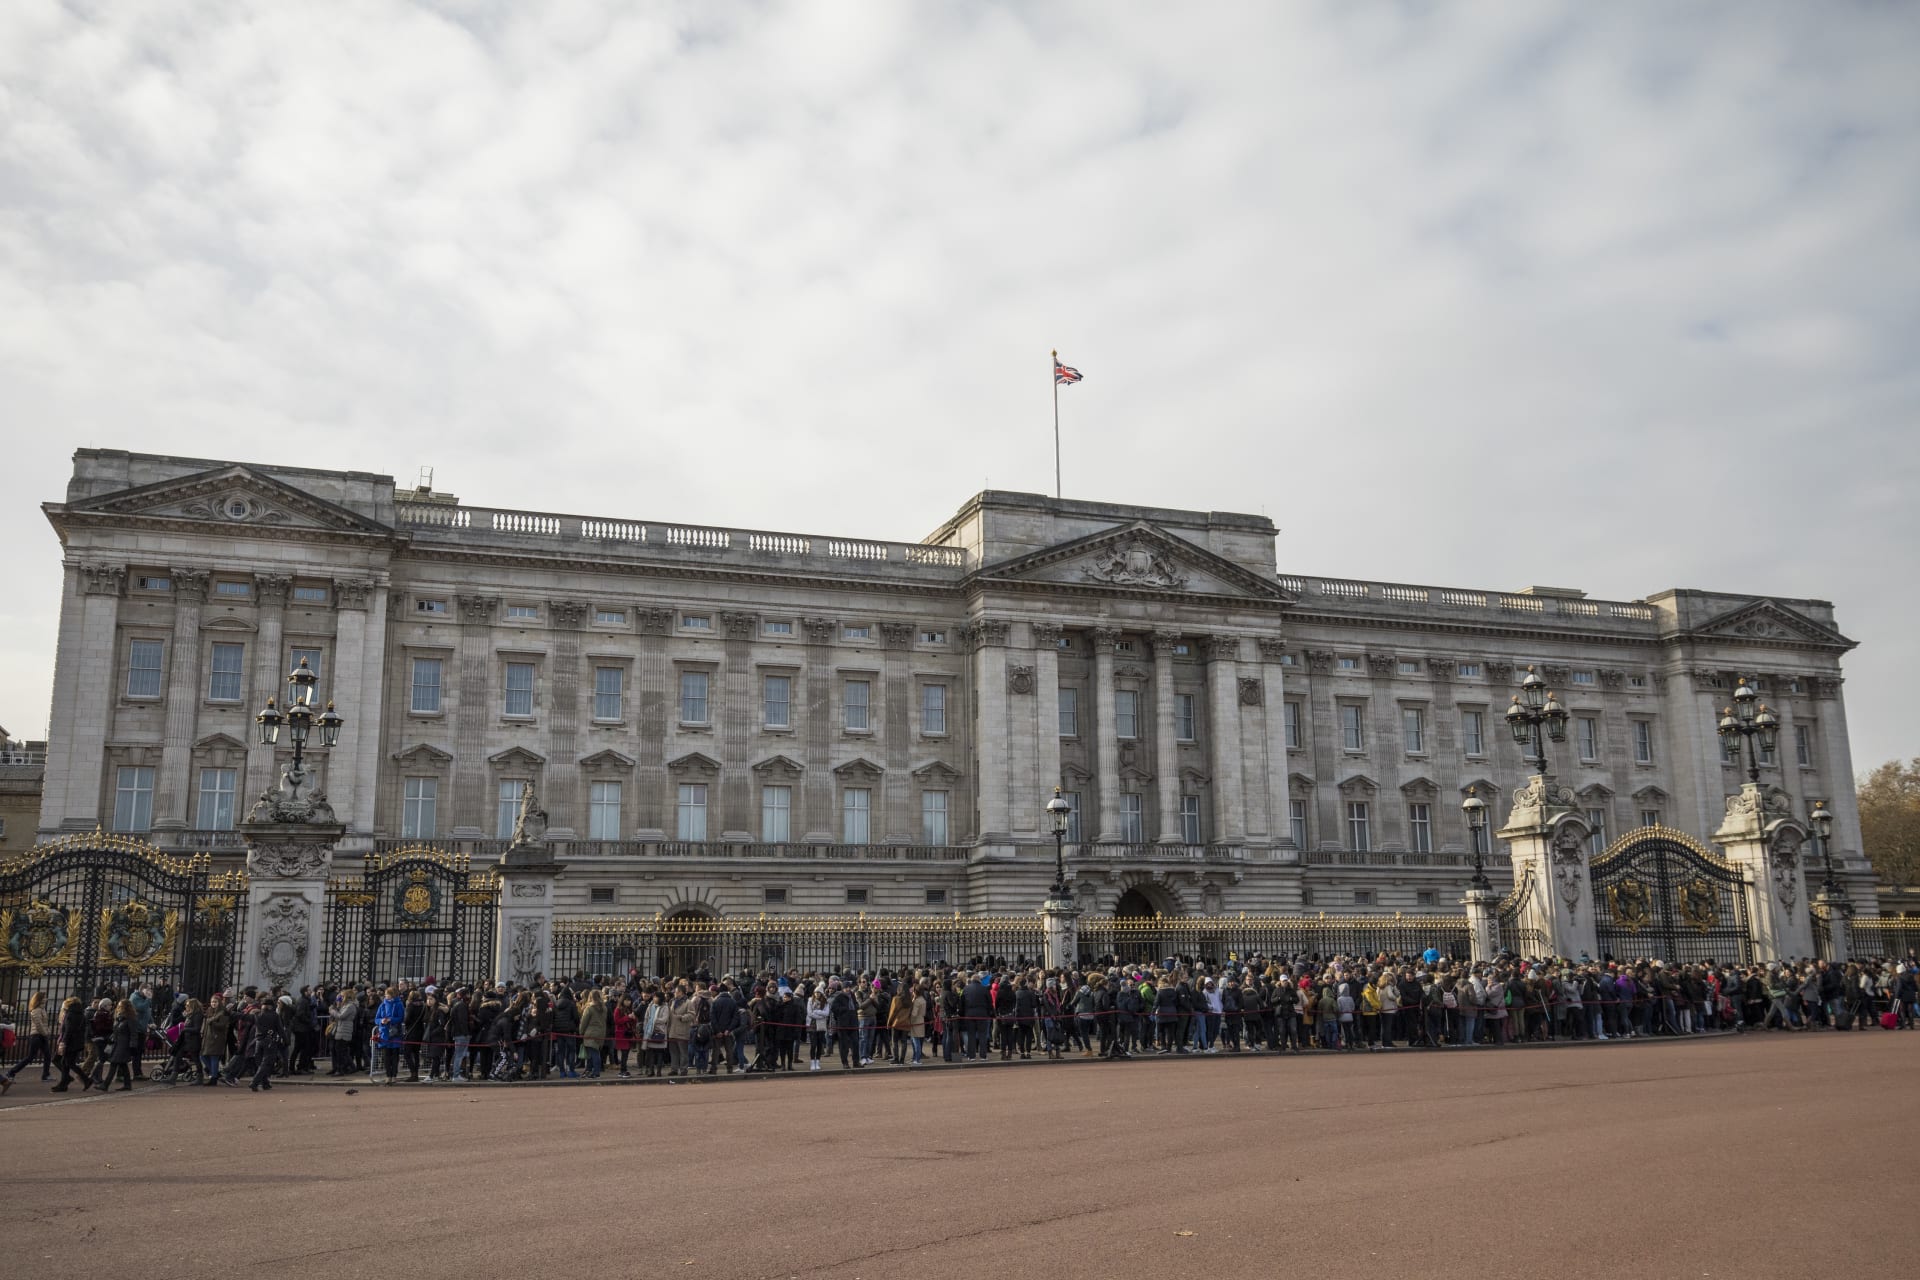 قصر باكنغهام يعلن استقالة أحد أفراد الأسرة بعد "تعليقات غير مقبولة" لامرأة بريطانية